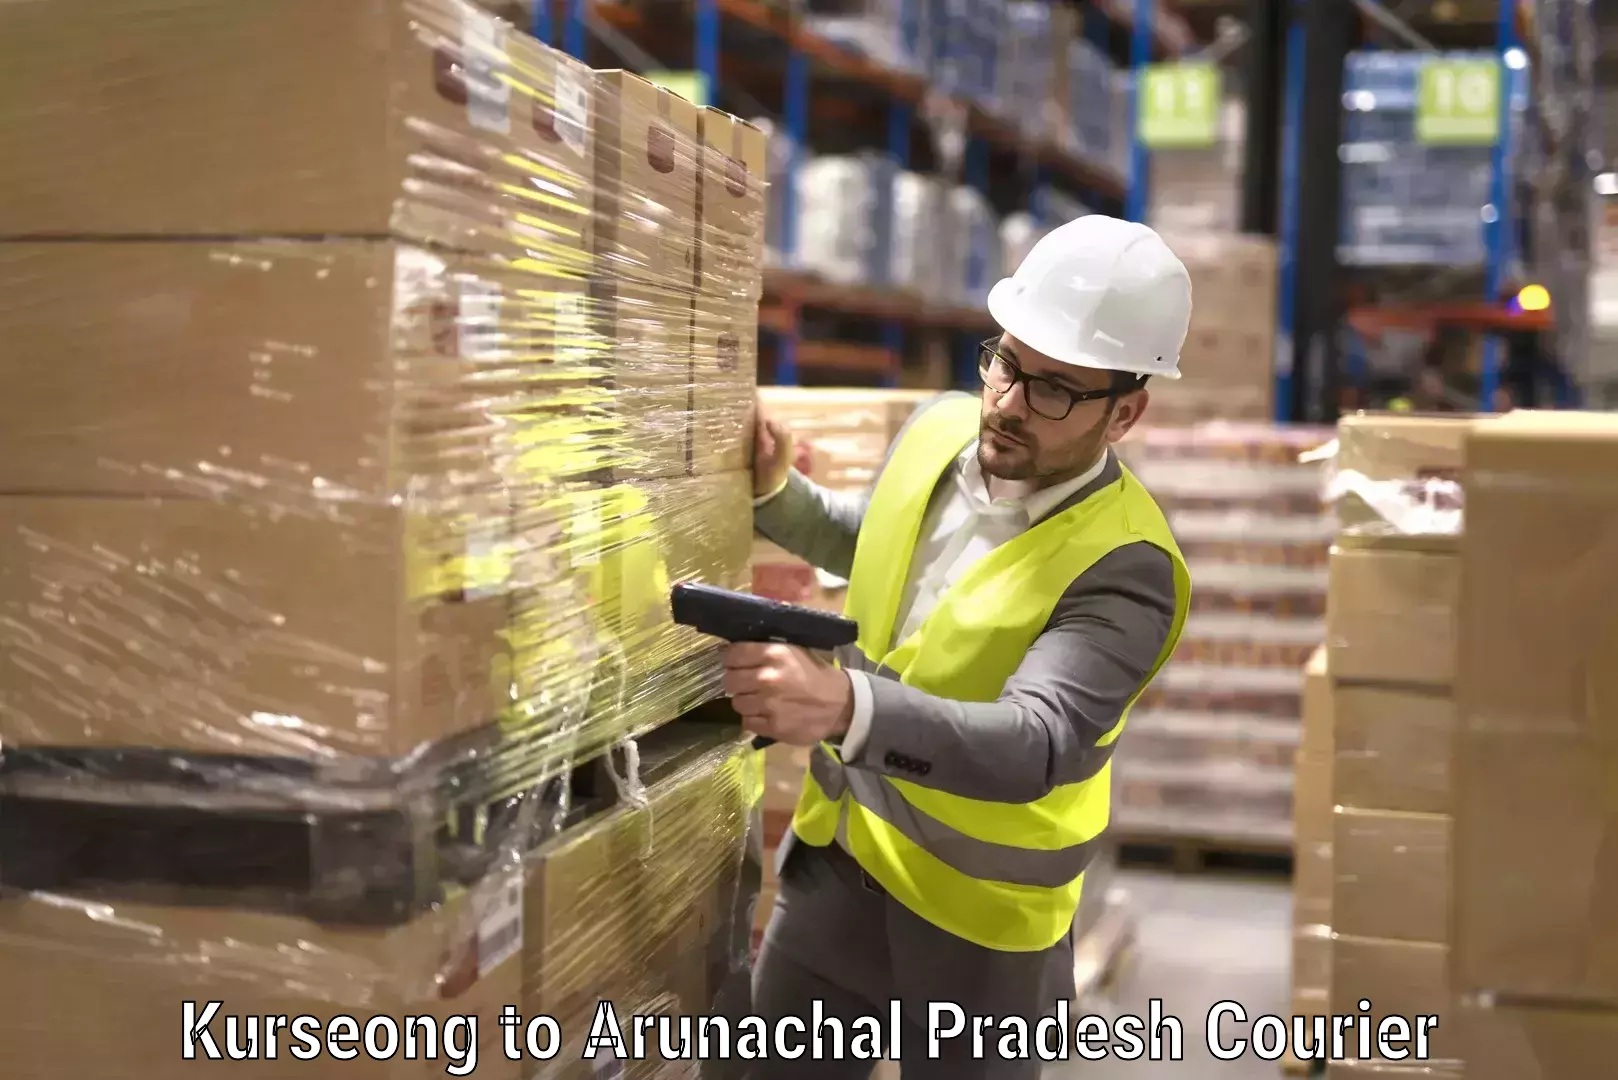 Furniture moving experts Kurseong to Arunachal Pradesh